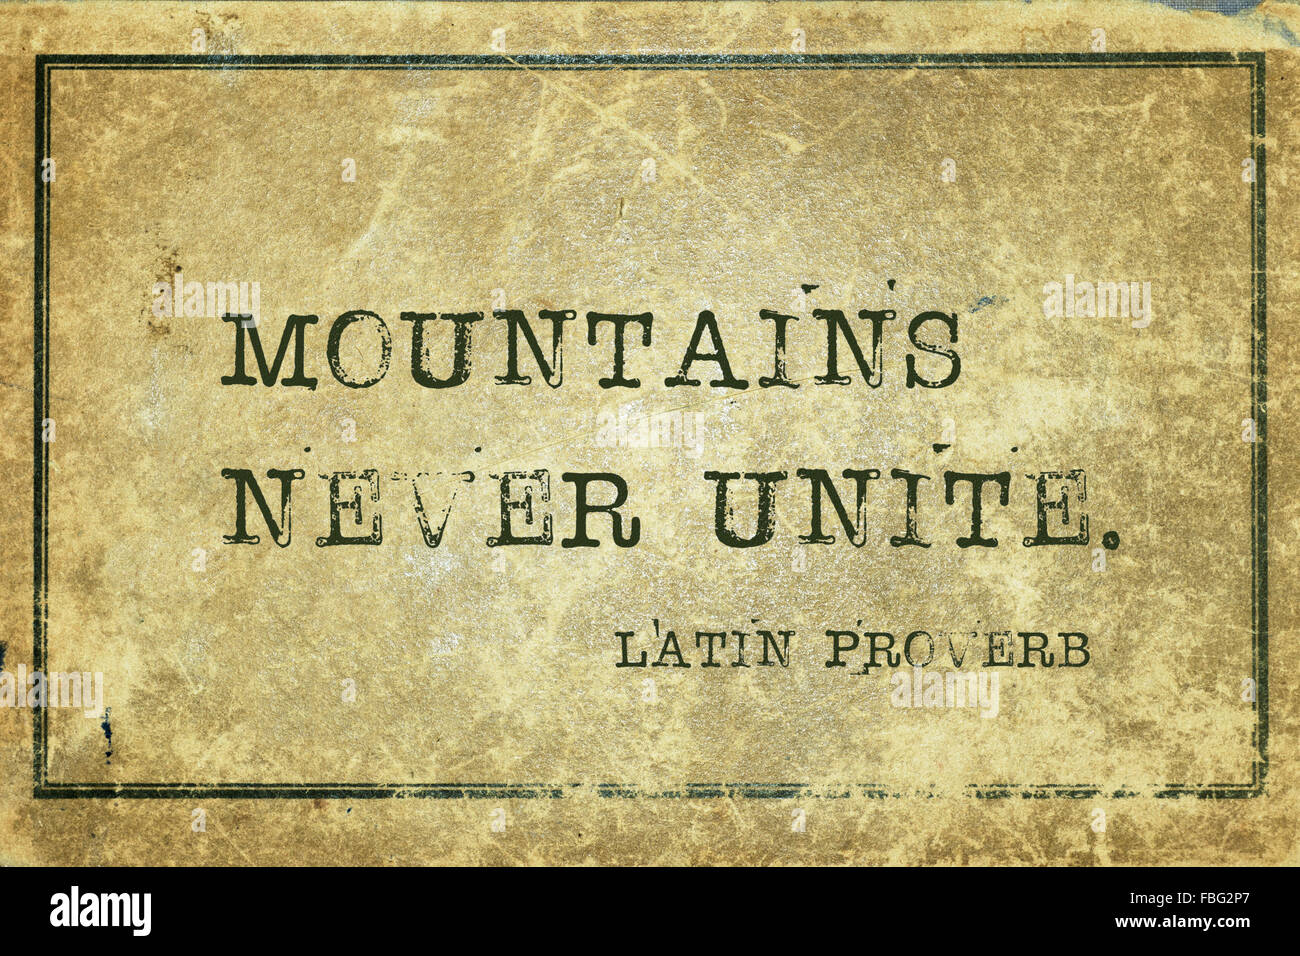 Montagne mai unite - antico proverbio latino stampato su grunge cartone vintage Foto Stock